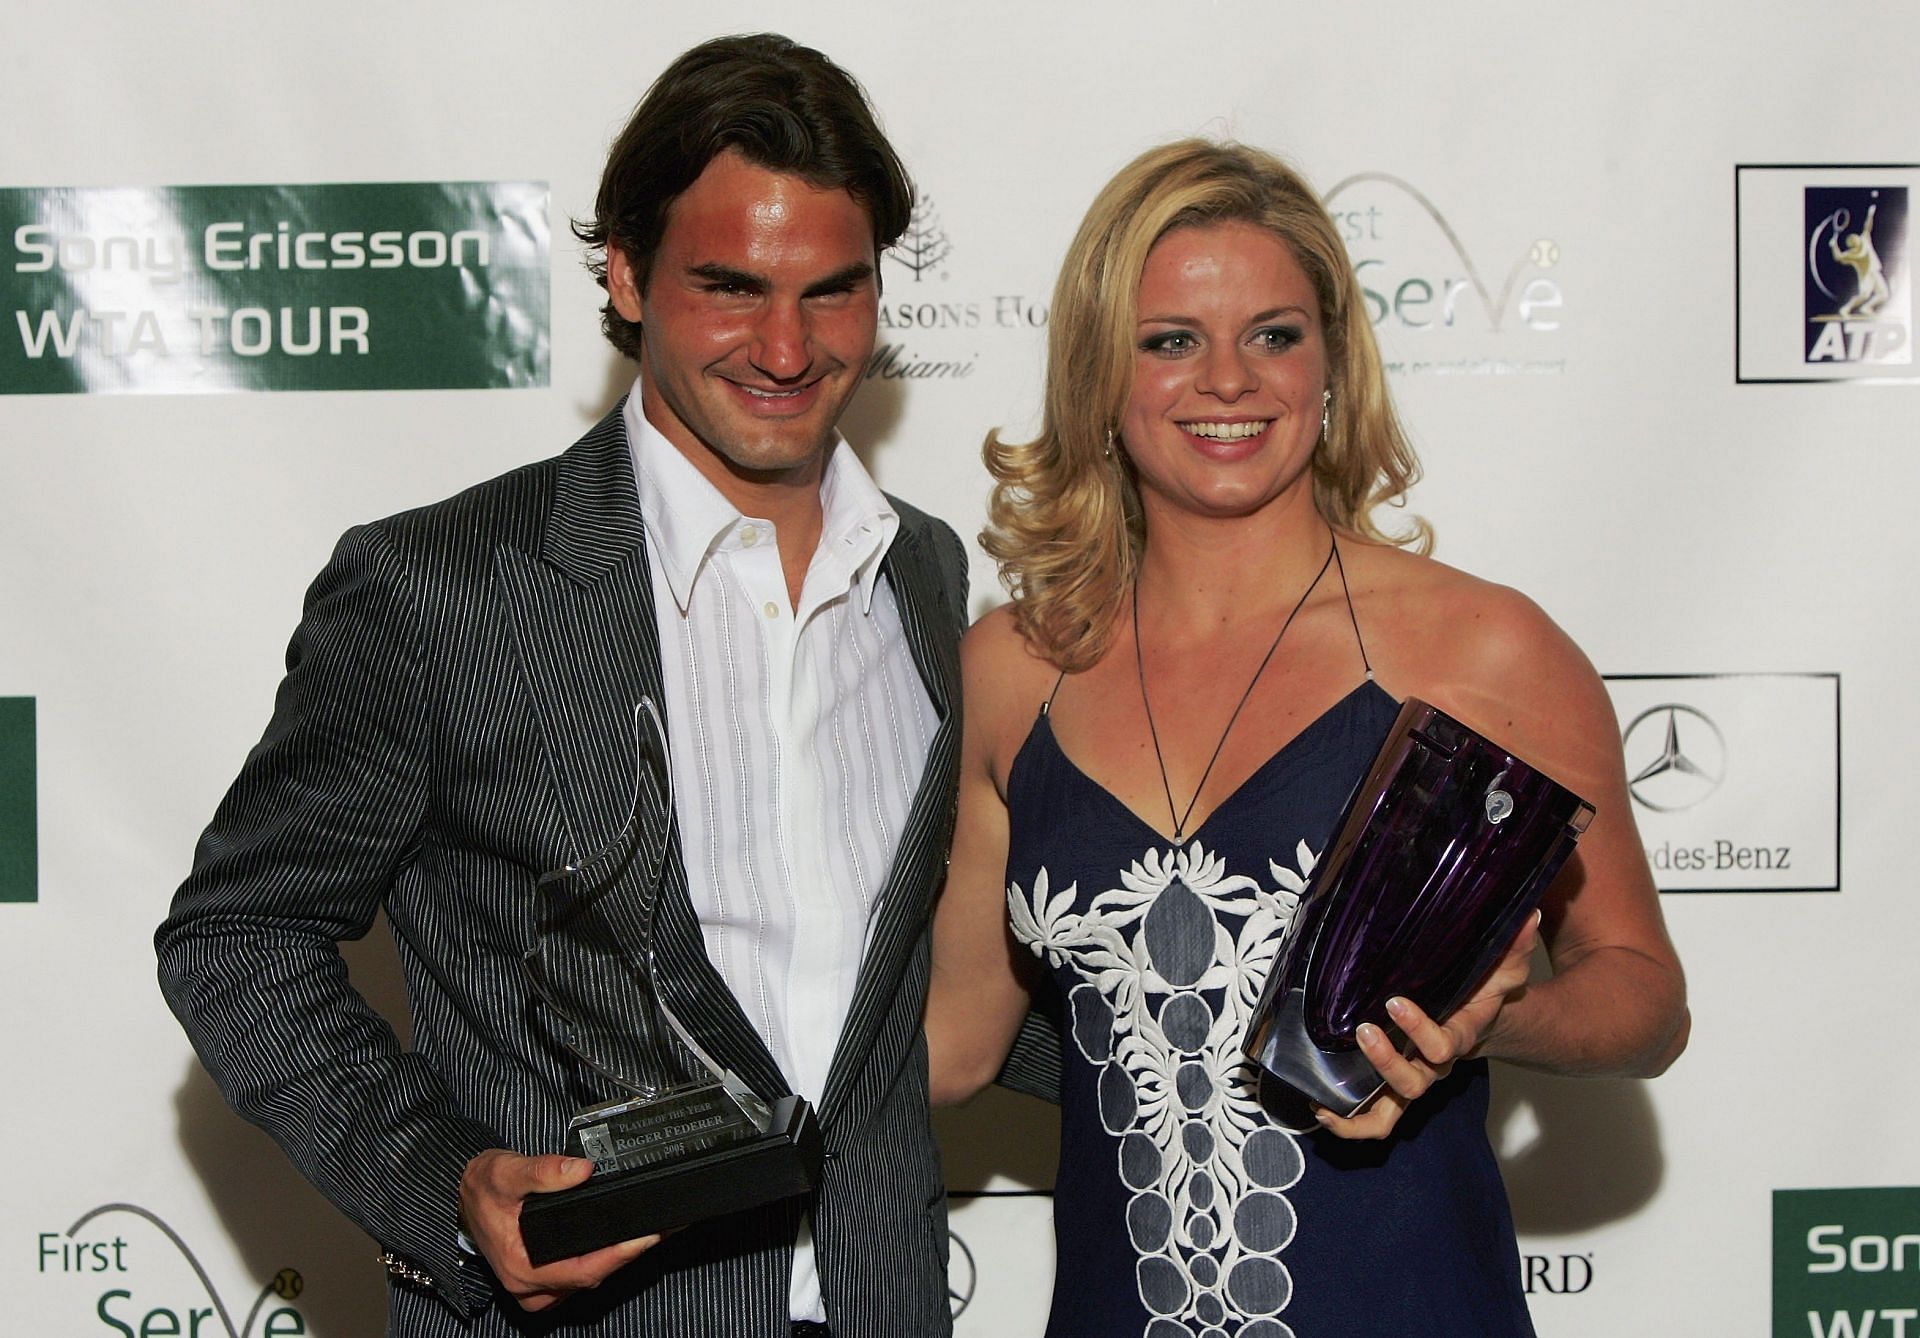 Roger Federer (left) and Kim Clijsters in 2006